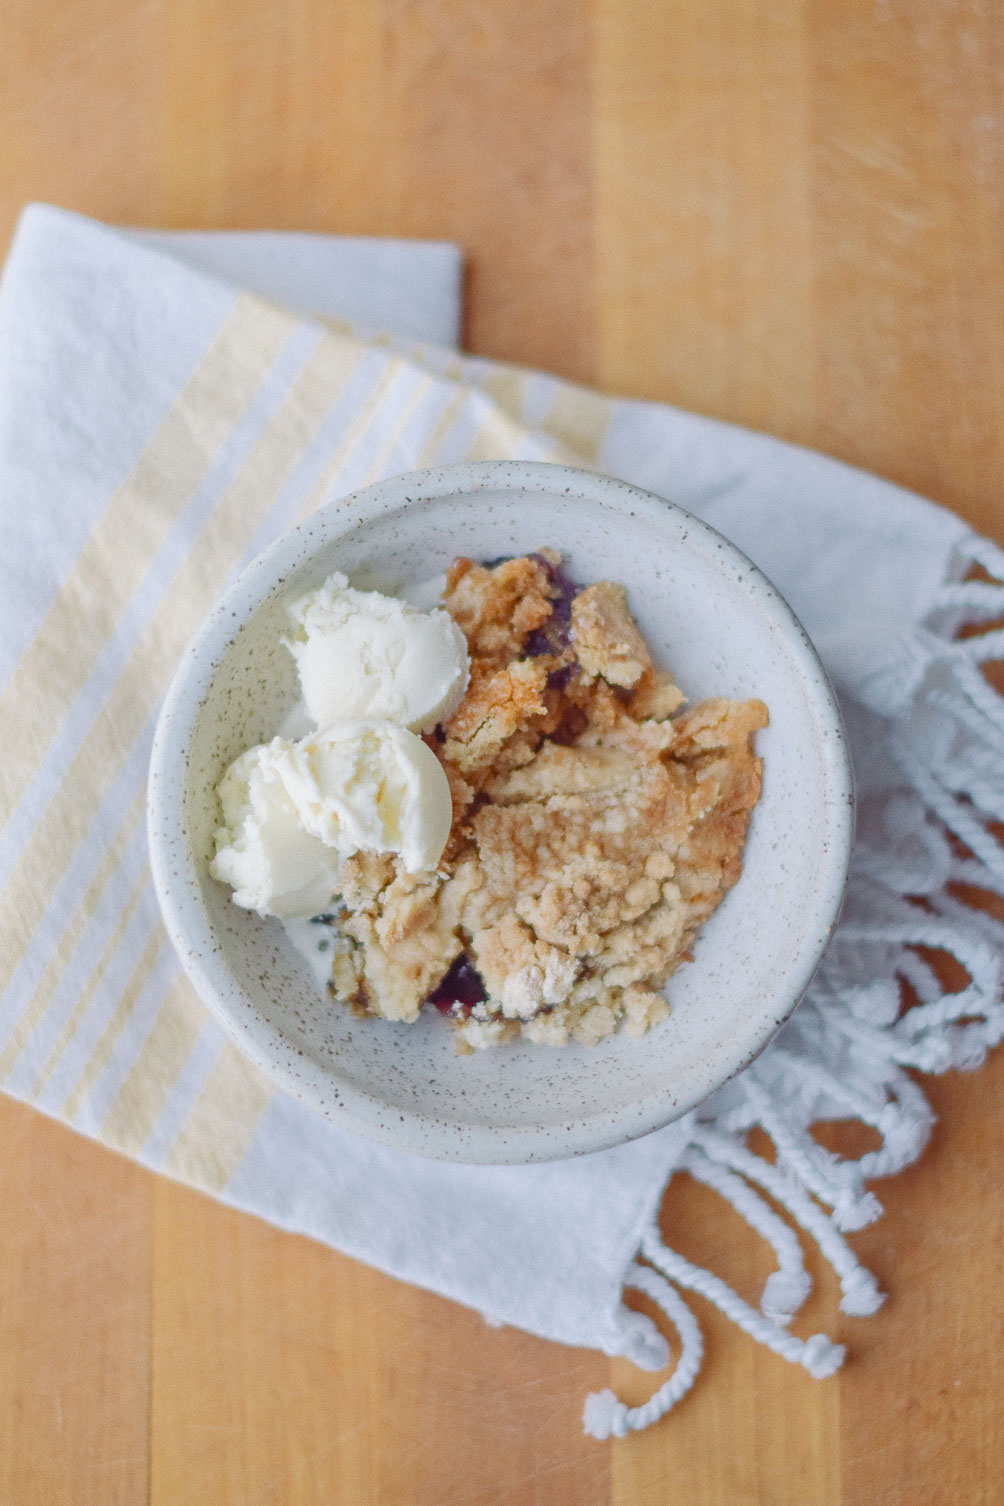 sharing an easy dessert recipe for blueberry dump cake